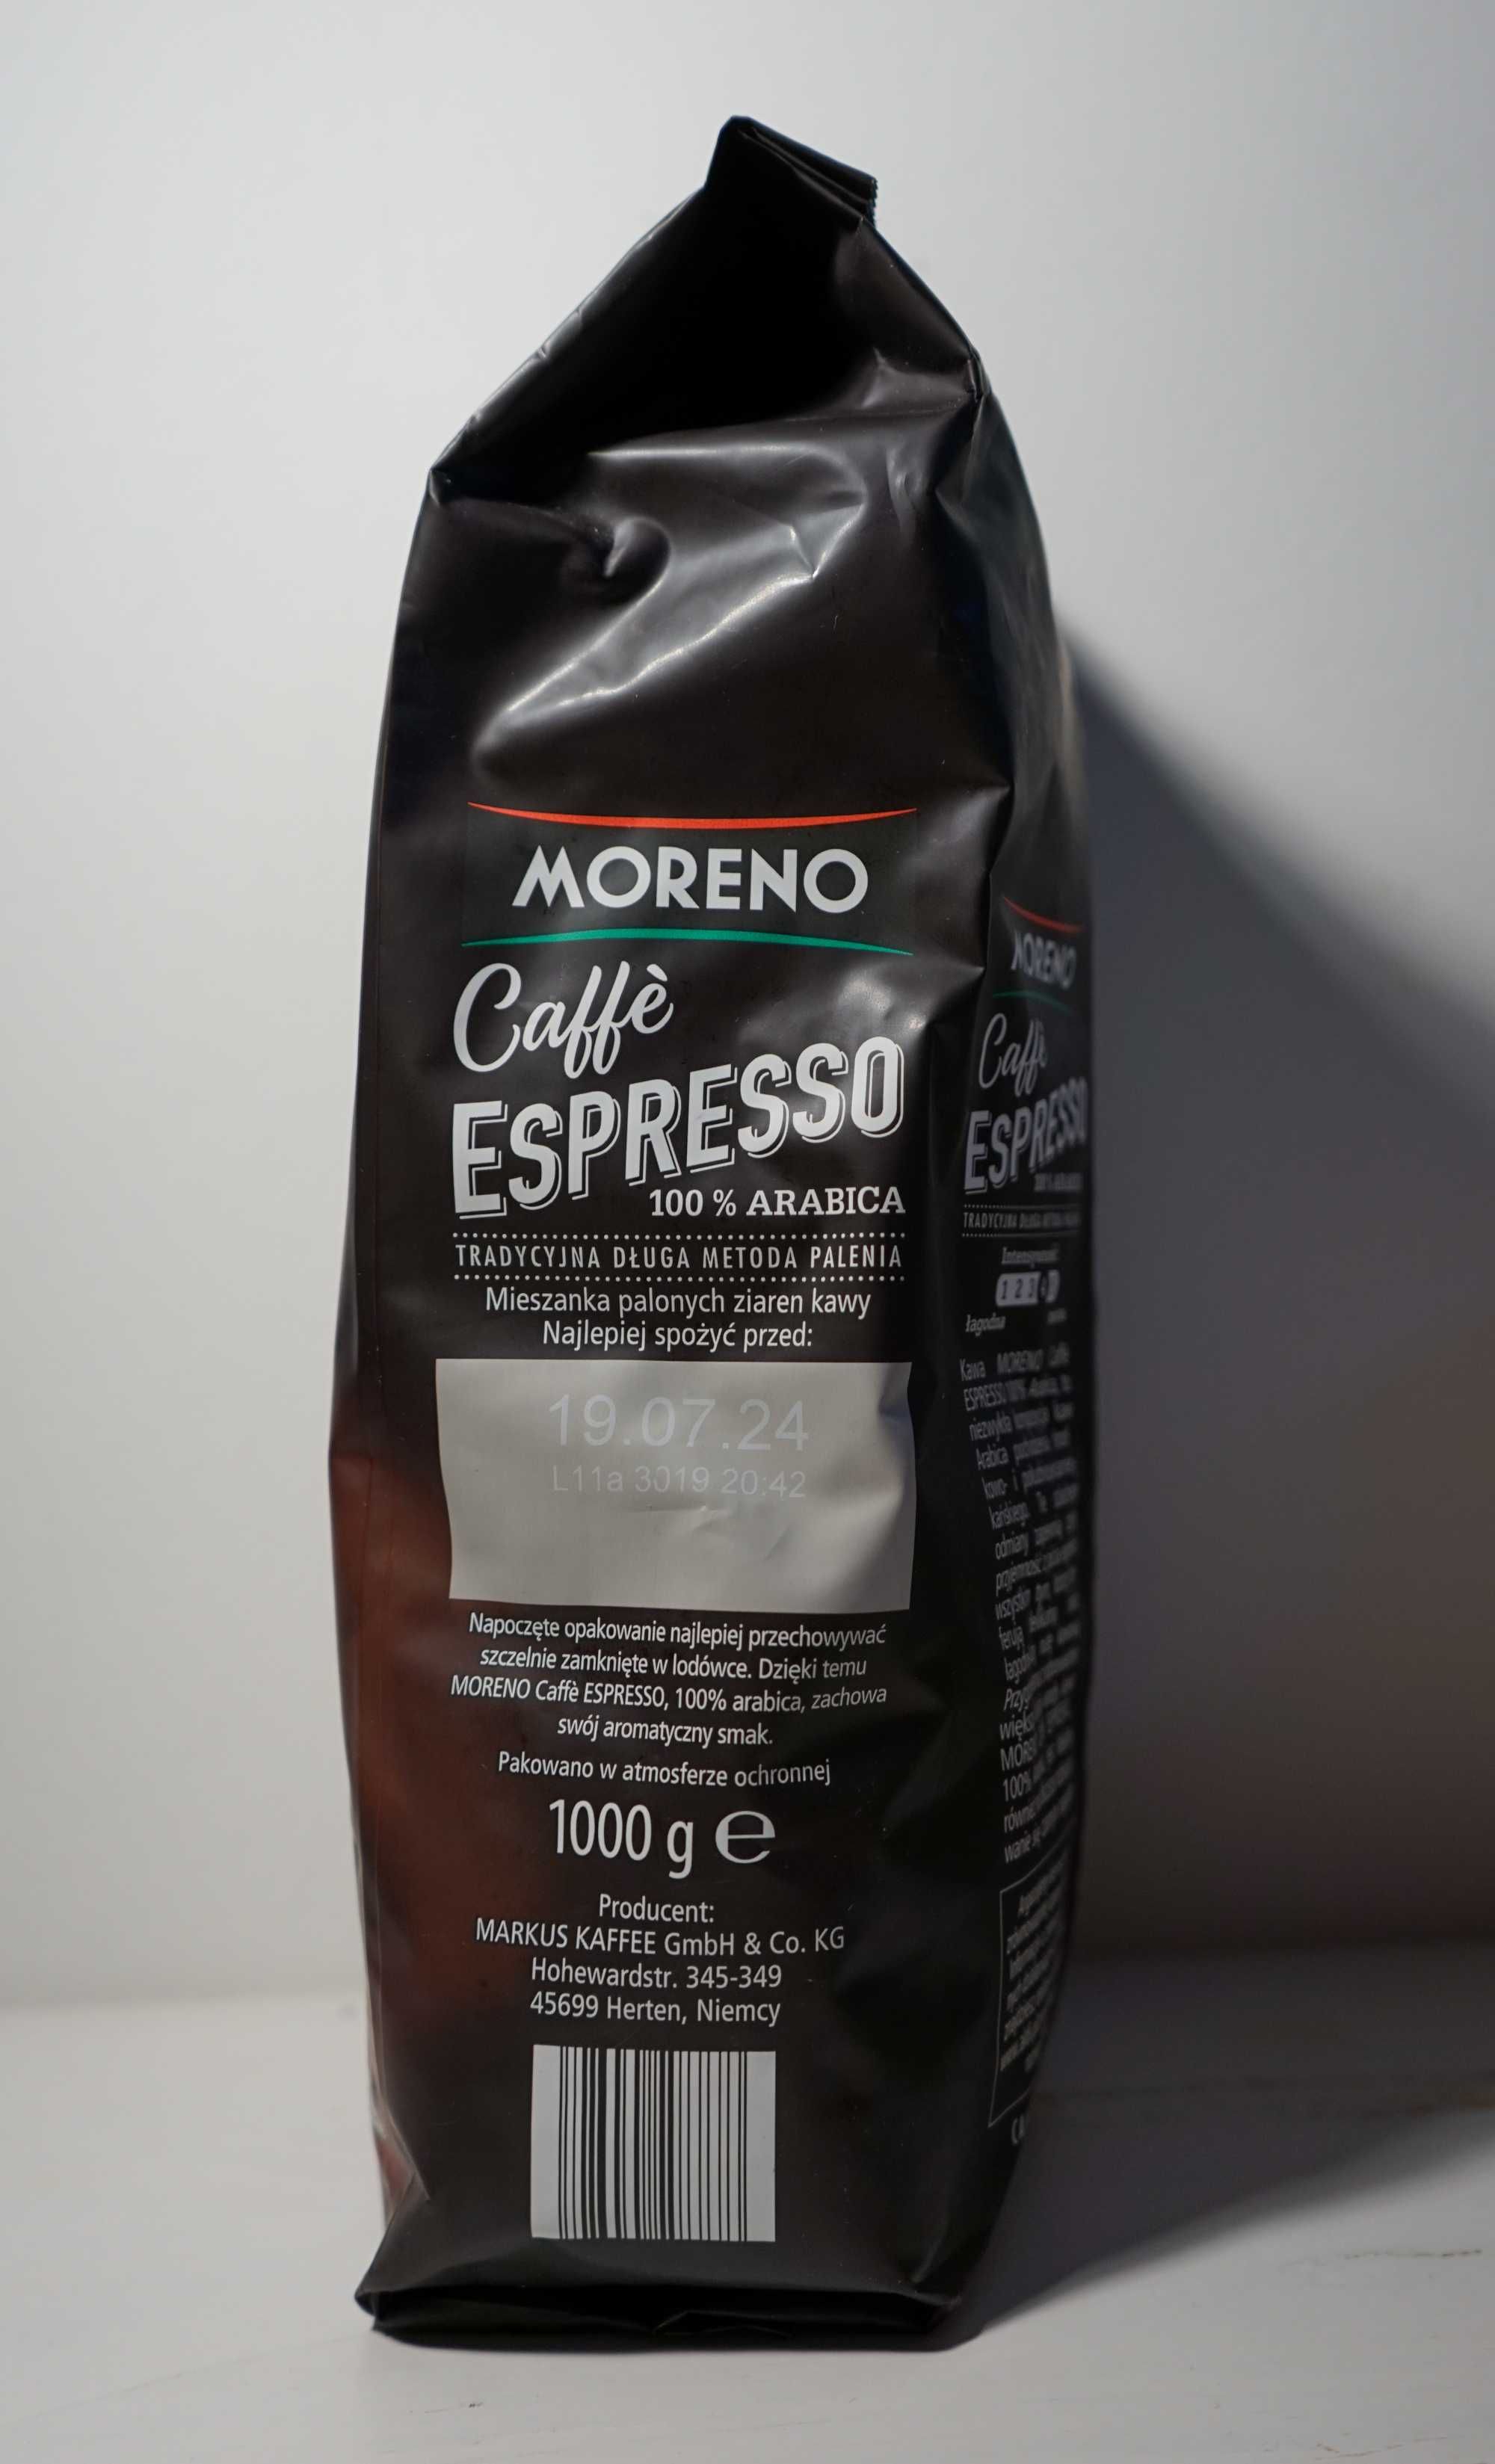 MORENO Caffè Espresso - kawa ziarnista 100% arabica 1kg